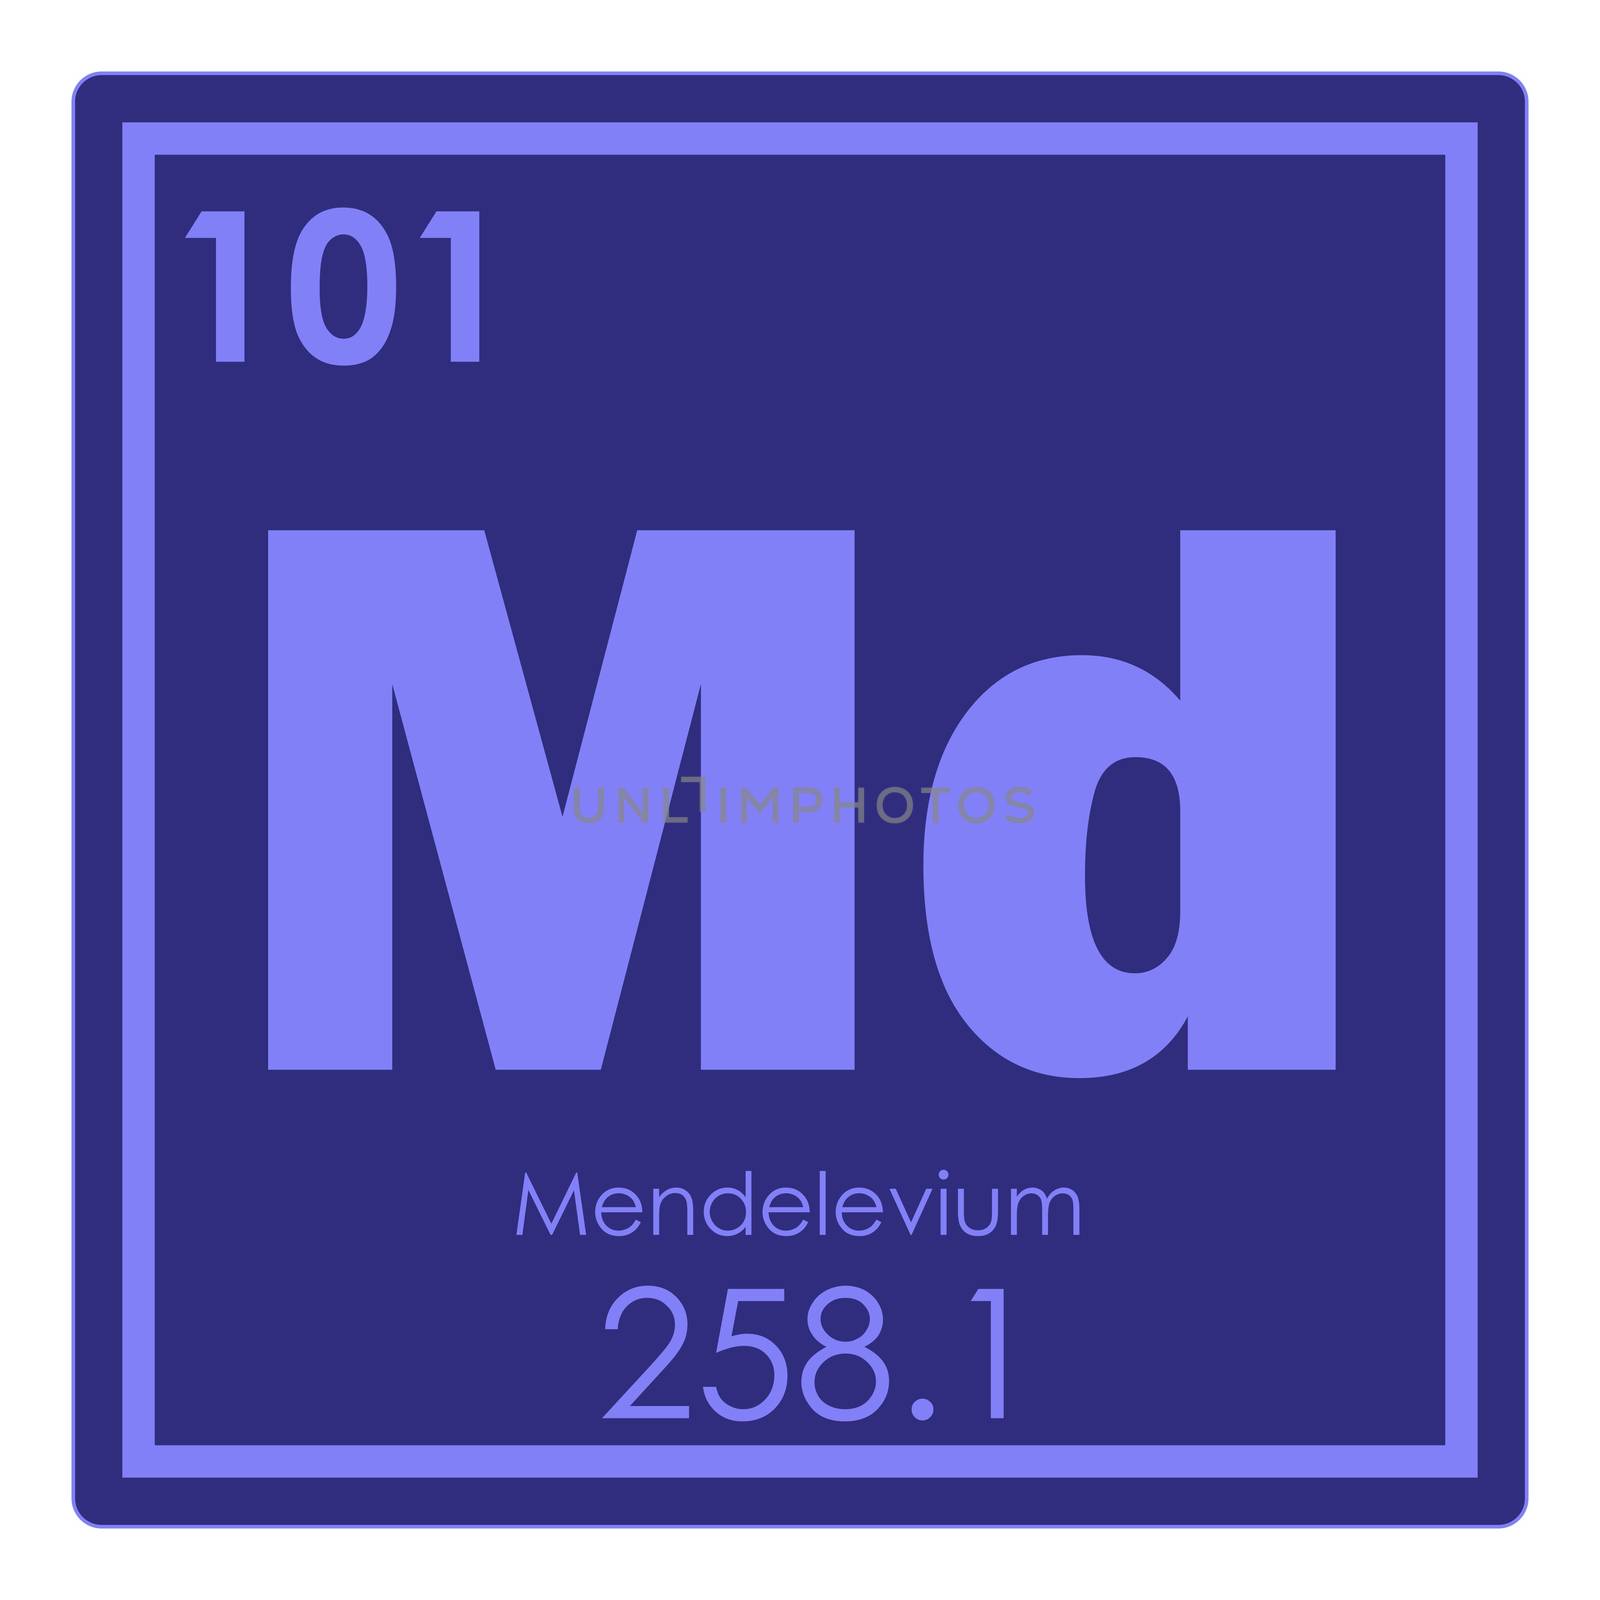 Mendelevium chemical element periodic table science symbol